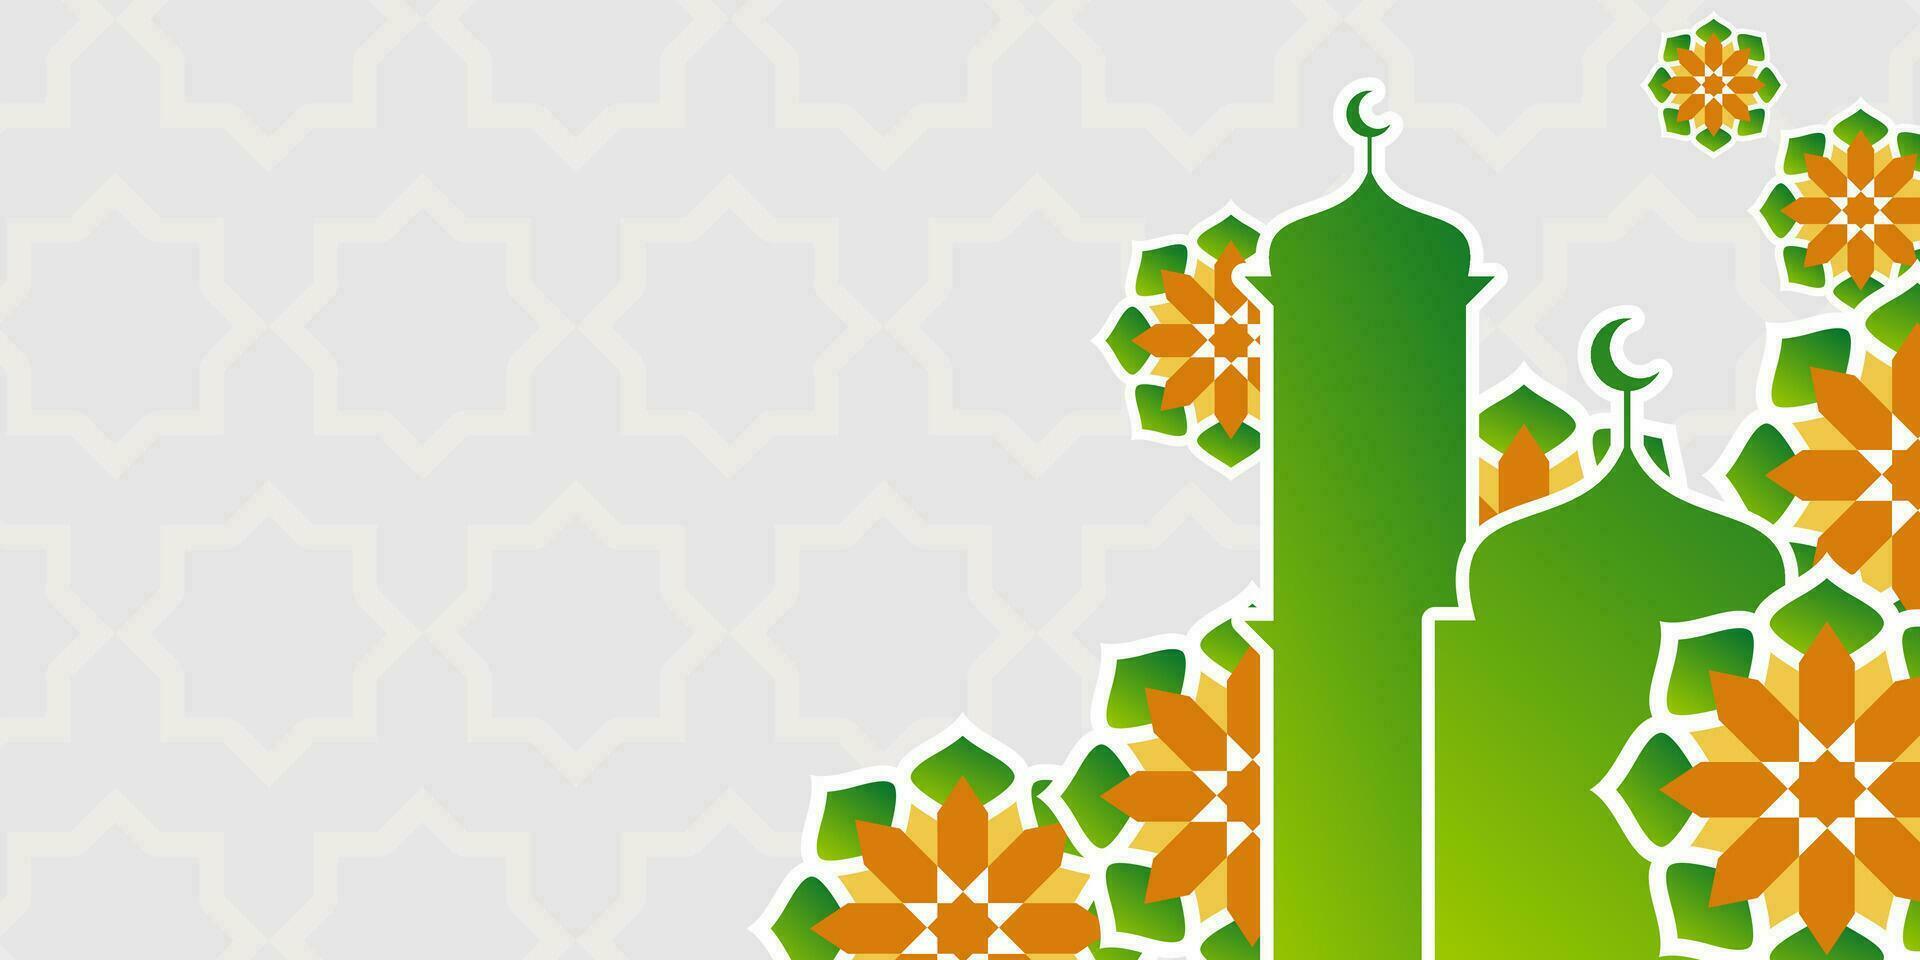 islamique arrière-plan, avec magnifique vert et Orange mandala ornements. vecteur modèle pour bannières, affiches, social médias, salutation cartes pour islamique vacances, Ramadan, eid al fitr, eid al-adha